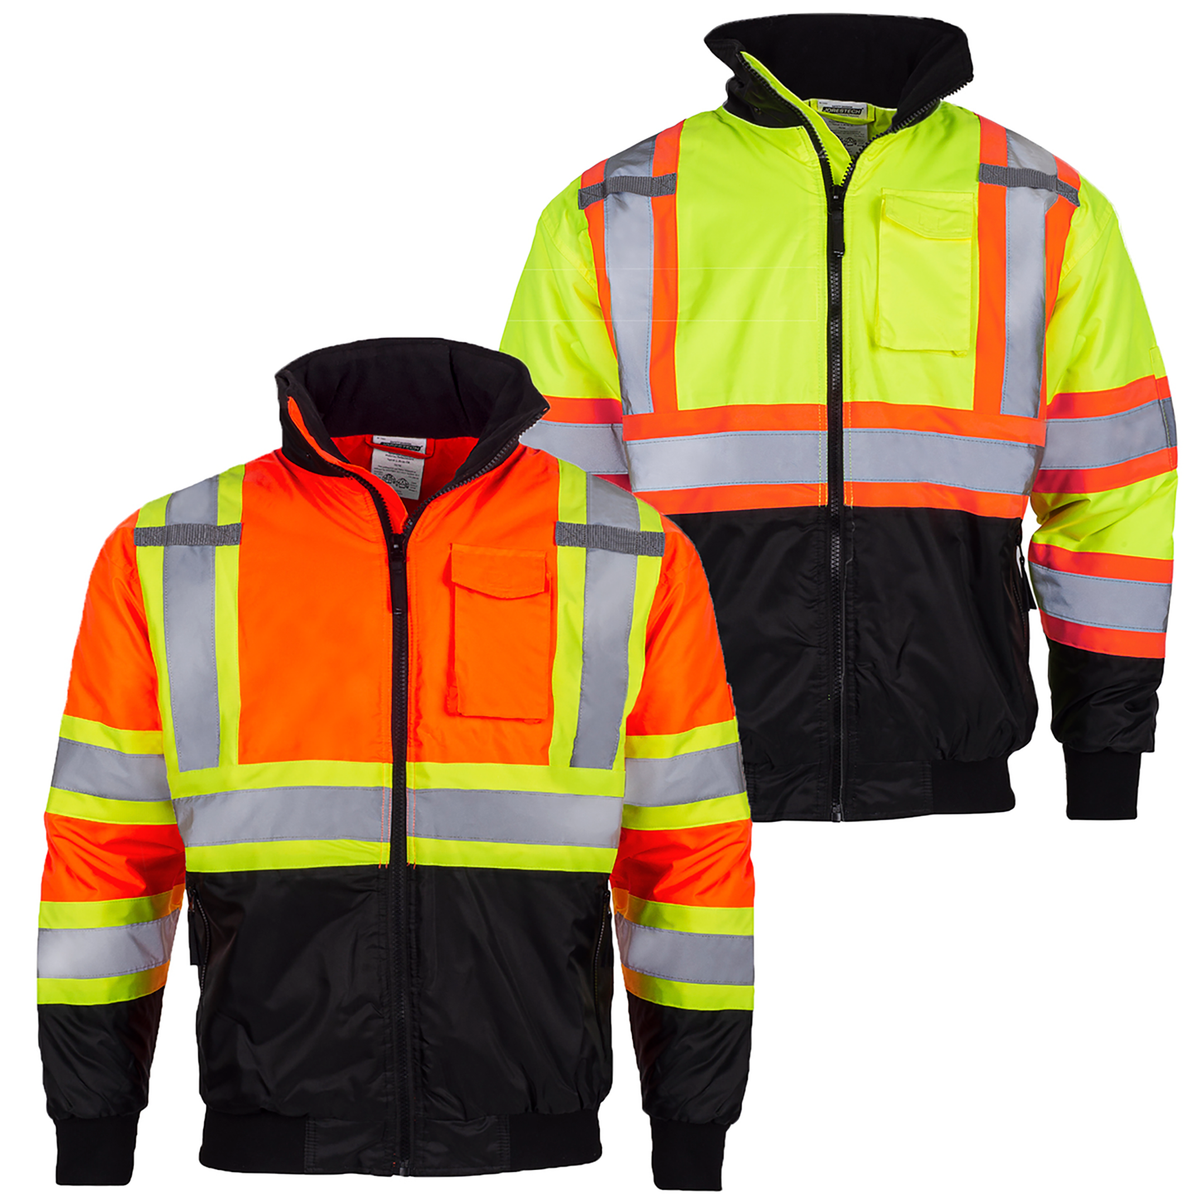 Heavy-Duty Safety Jacket with Heat-Transfer Reflective Stripes | Technopack Safety & PPE S / Black by JORESTECH